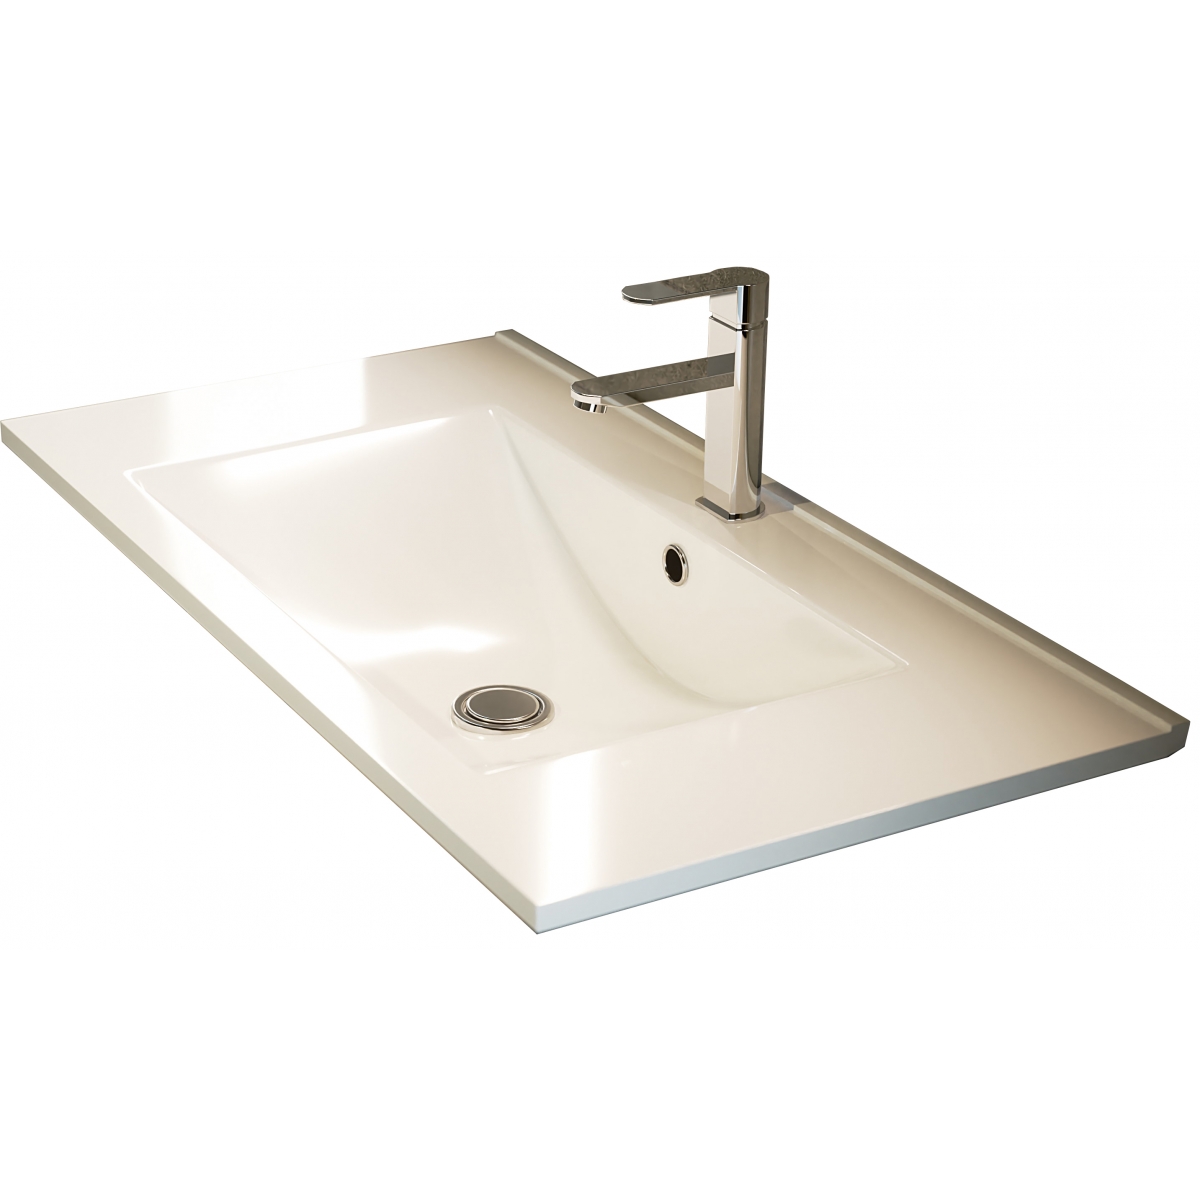 Fotos ambiente de Mueble de baño de suelo Mayorca de 80 cm de ancho color Hiberian con lavabo integrado [55417]